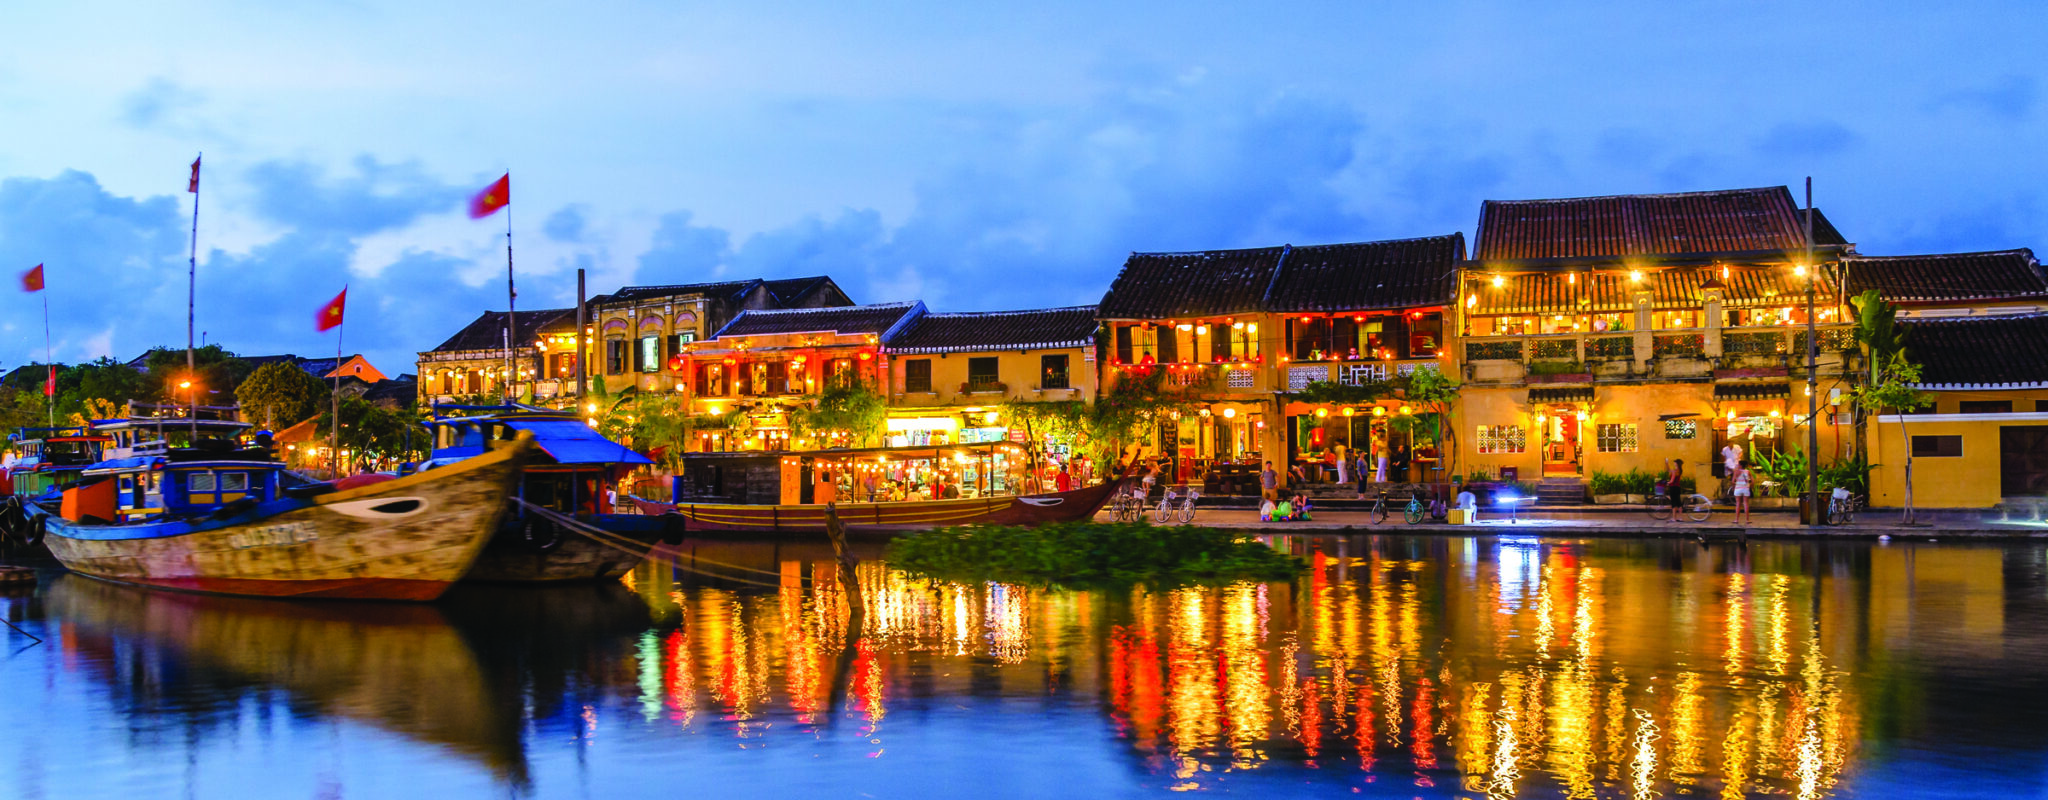 Hoi An Riverside twilight, Vietnam